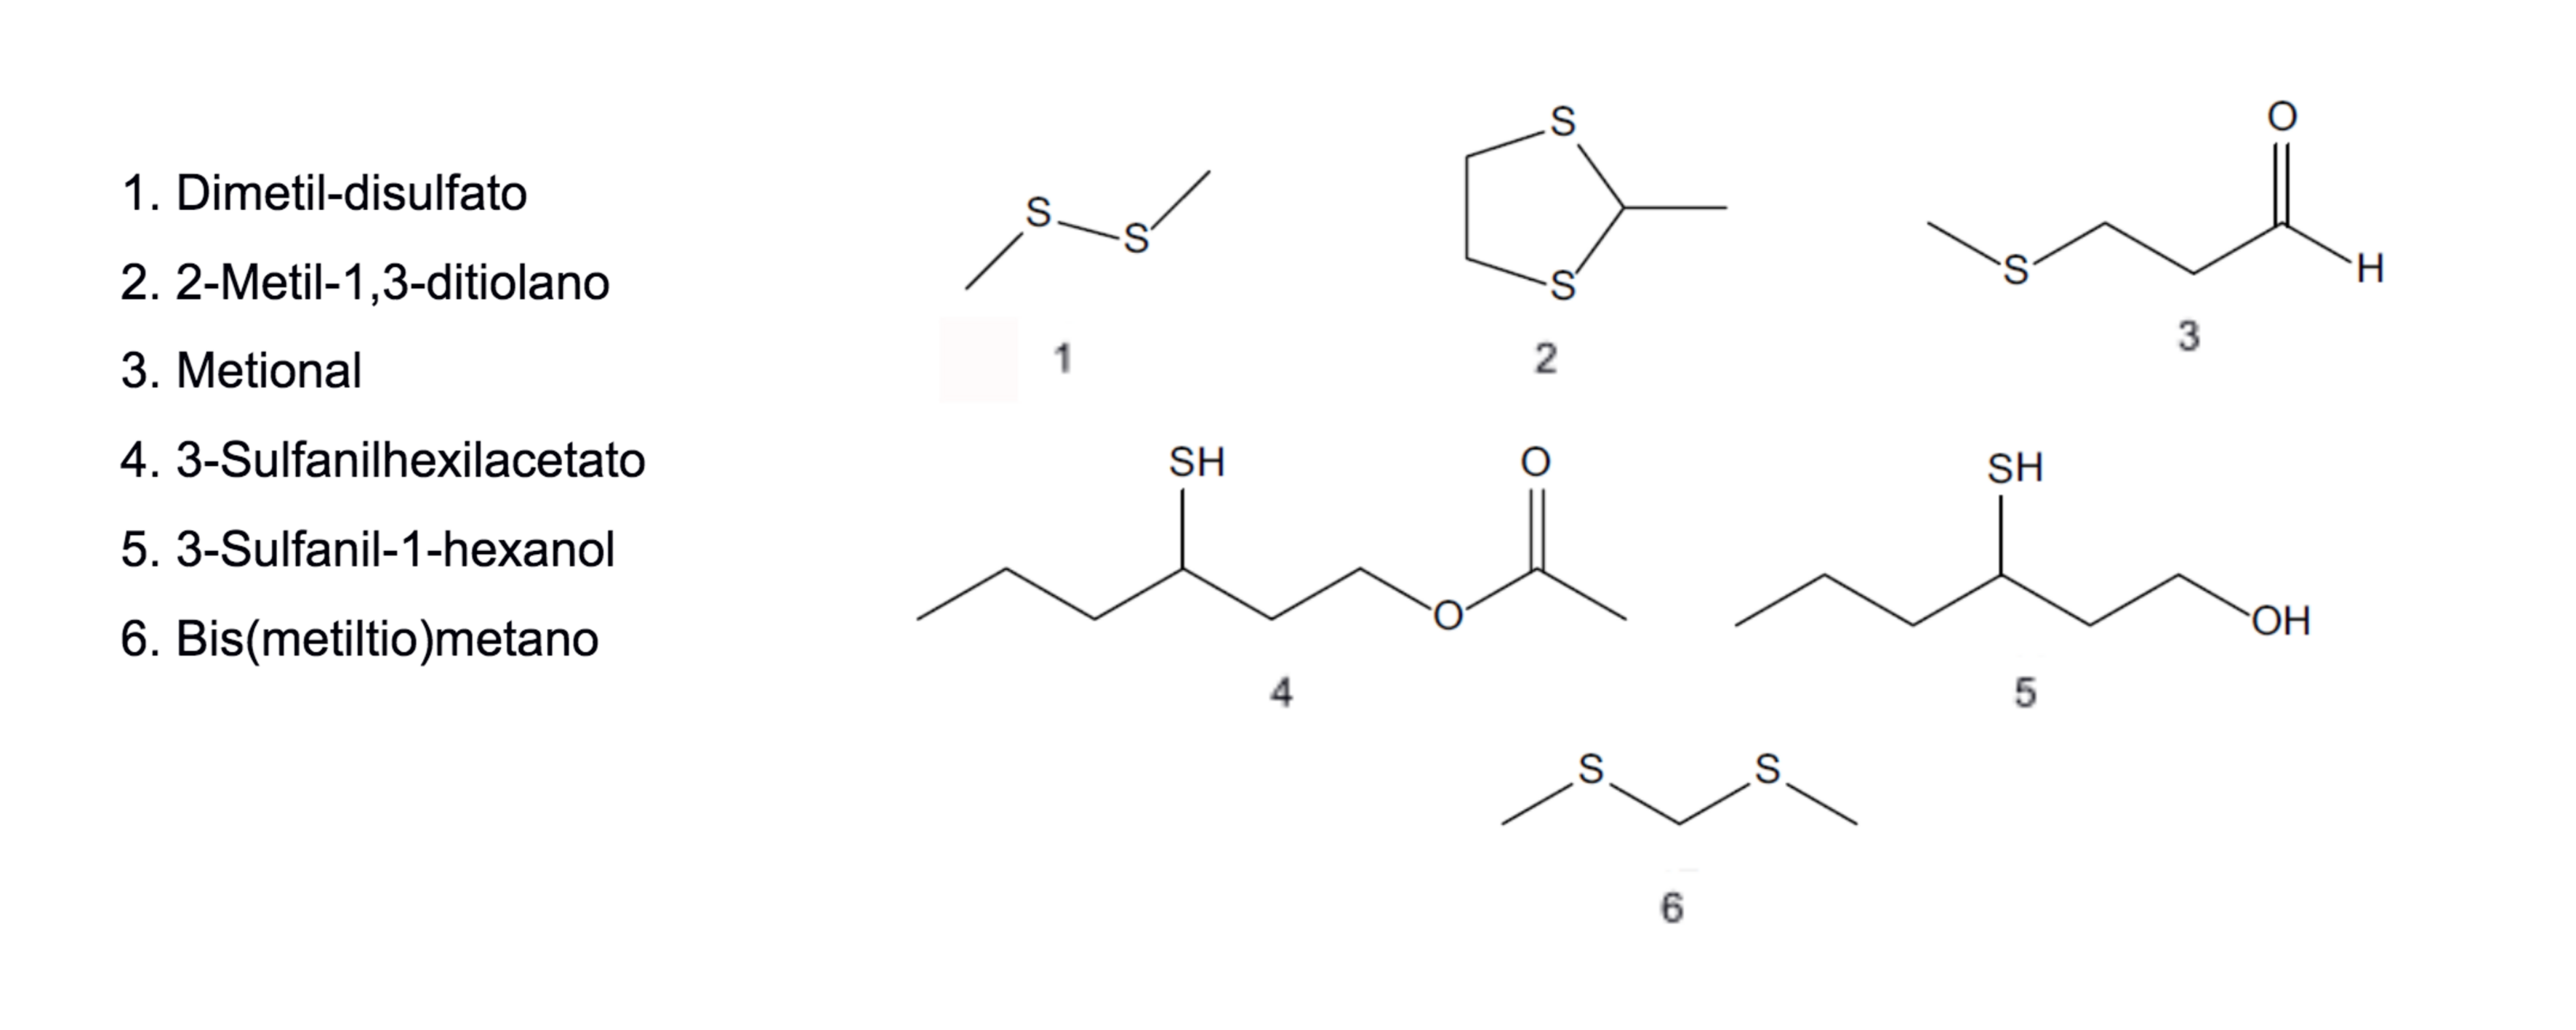 Figura 4.2 Estructura química de los principales compuestos volátiles sulfatados responsables del aroma particular del cas. Fuente: Cuadrado-Silva (2017).